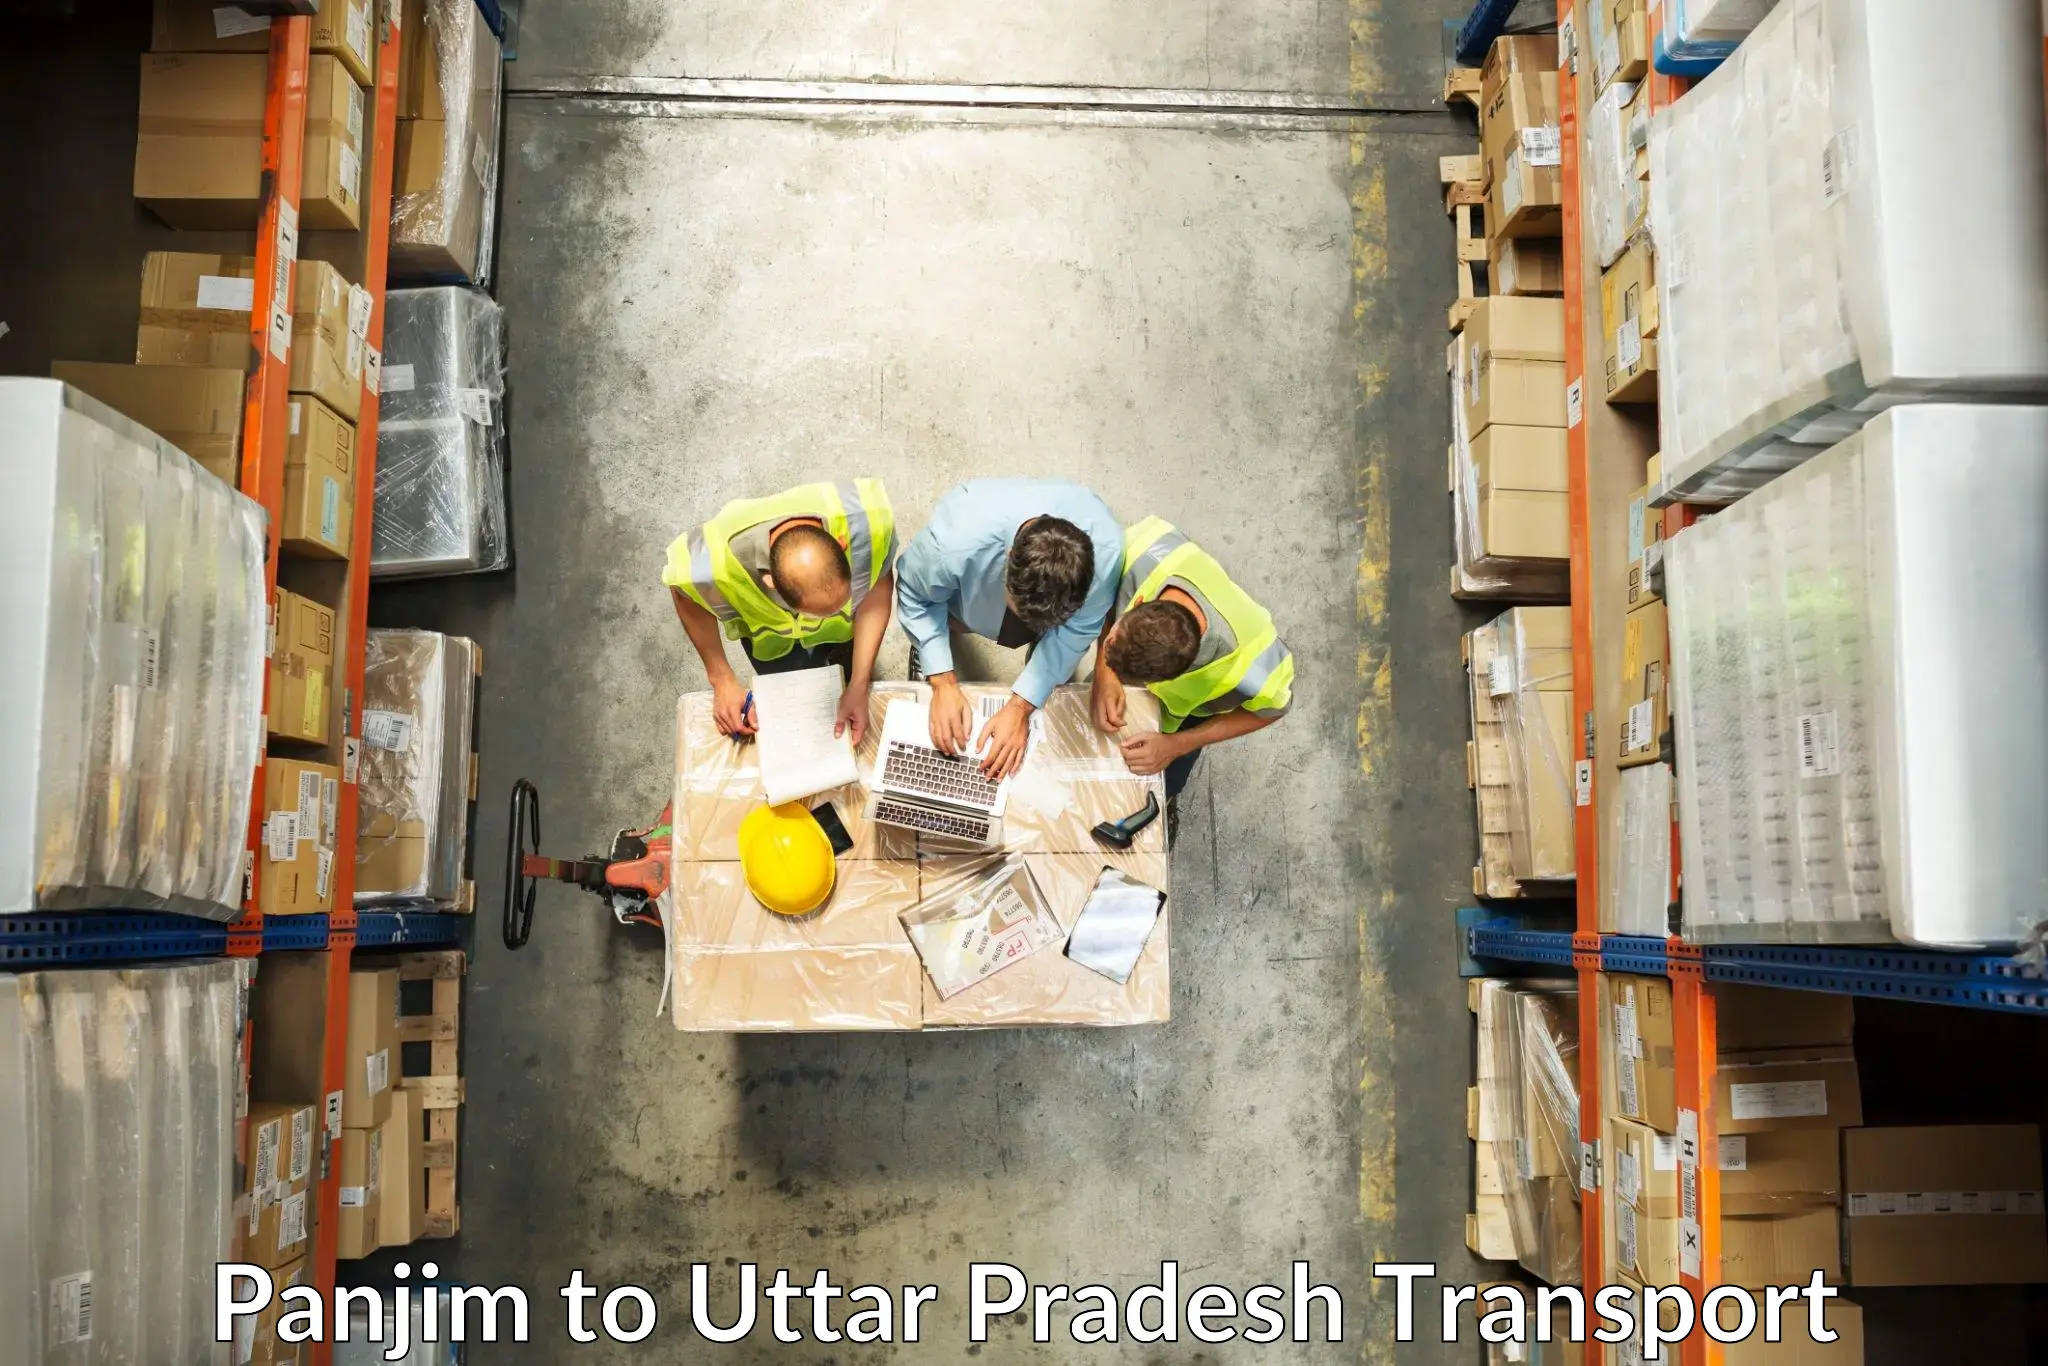 Daily transport service Panjim to Uttar Pradesh